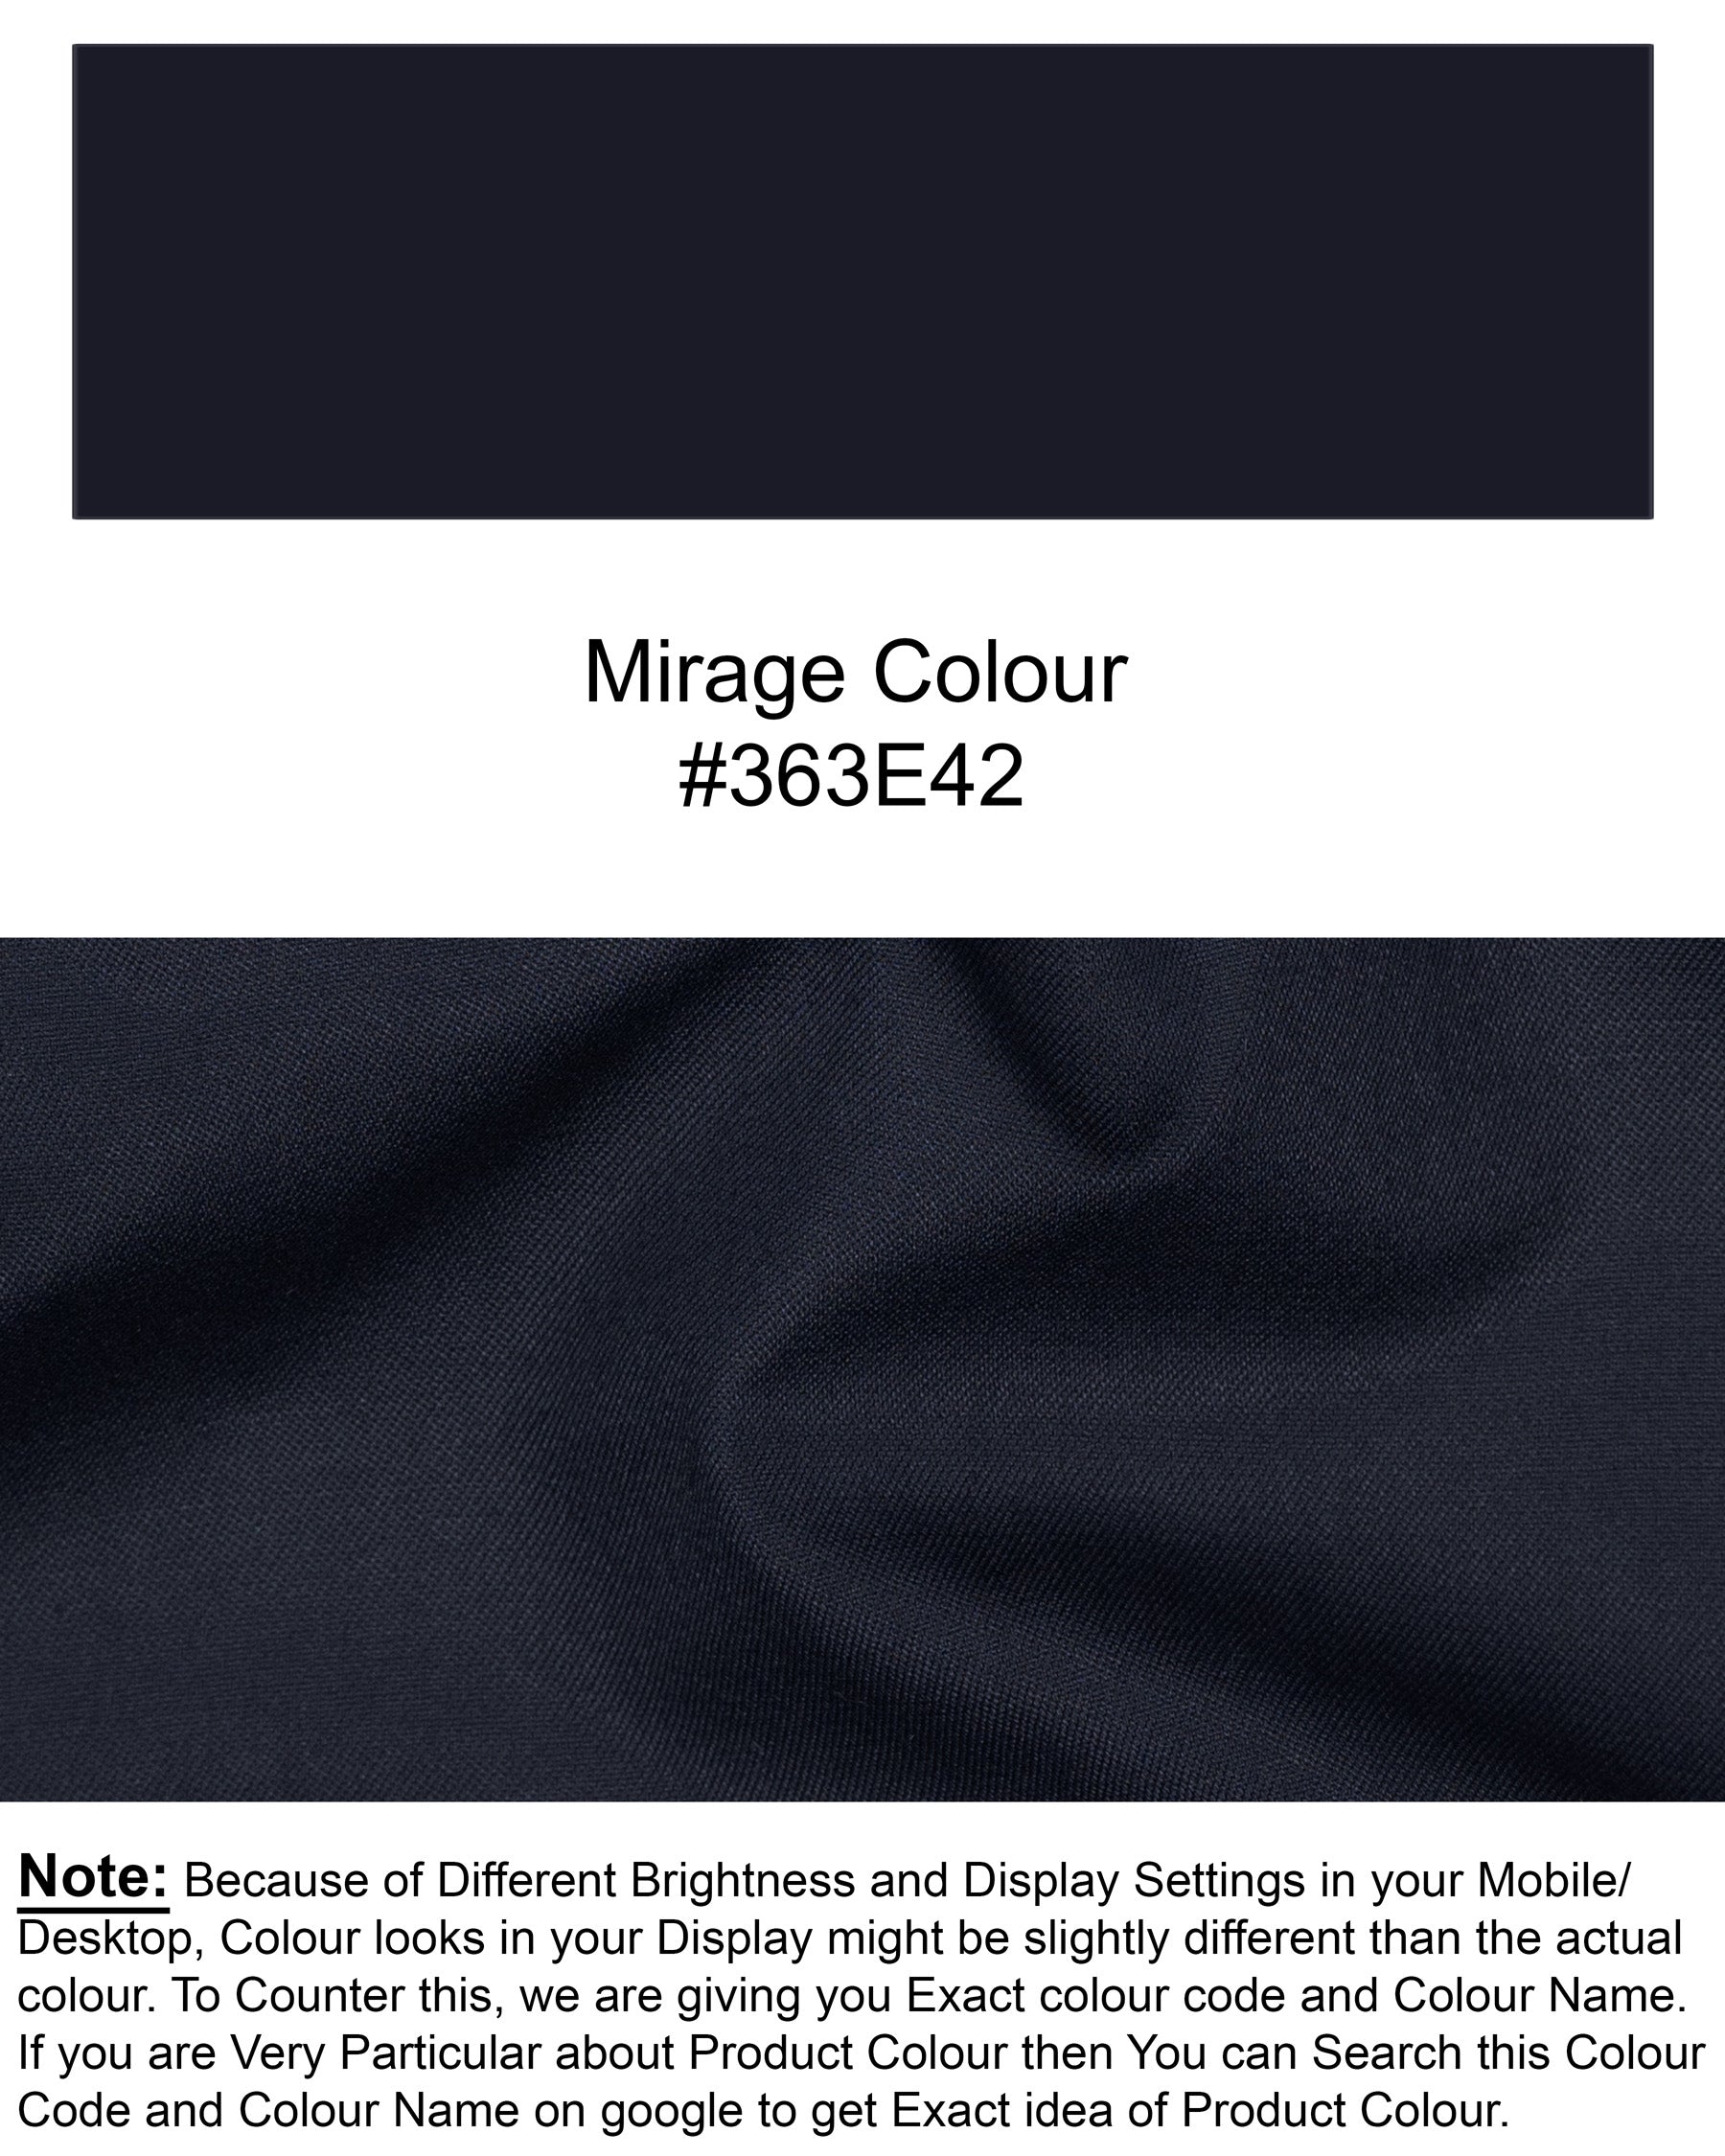 Mirage Blue Wool Rich Blazer BL1449-SB-36,BL1449-SB-38,BL1449-SB-40,BL1449-SB-42,BL1449-SB-44,BL1449-SB-46,BL1449-SB-48,BL1449-SB-50,BL1449-SB-52,BL1449-SB-54,BL1449-SB-56,BL1449-SB-58,BL1449-SB-60